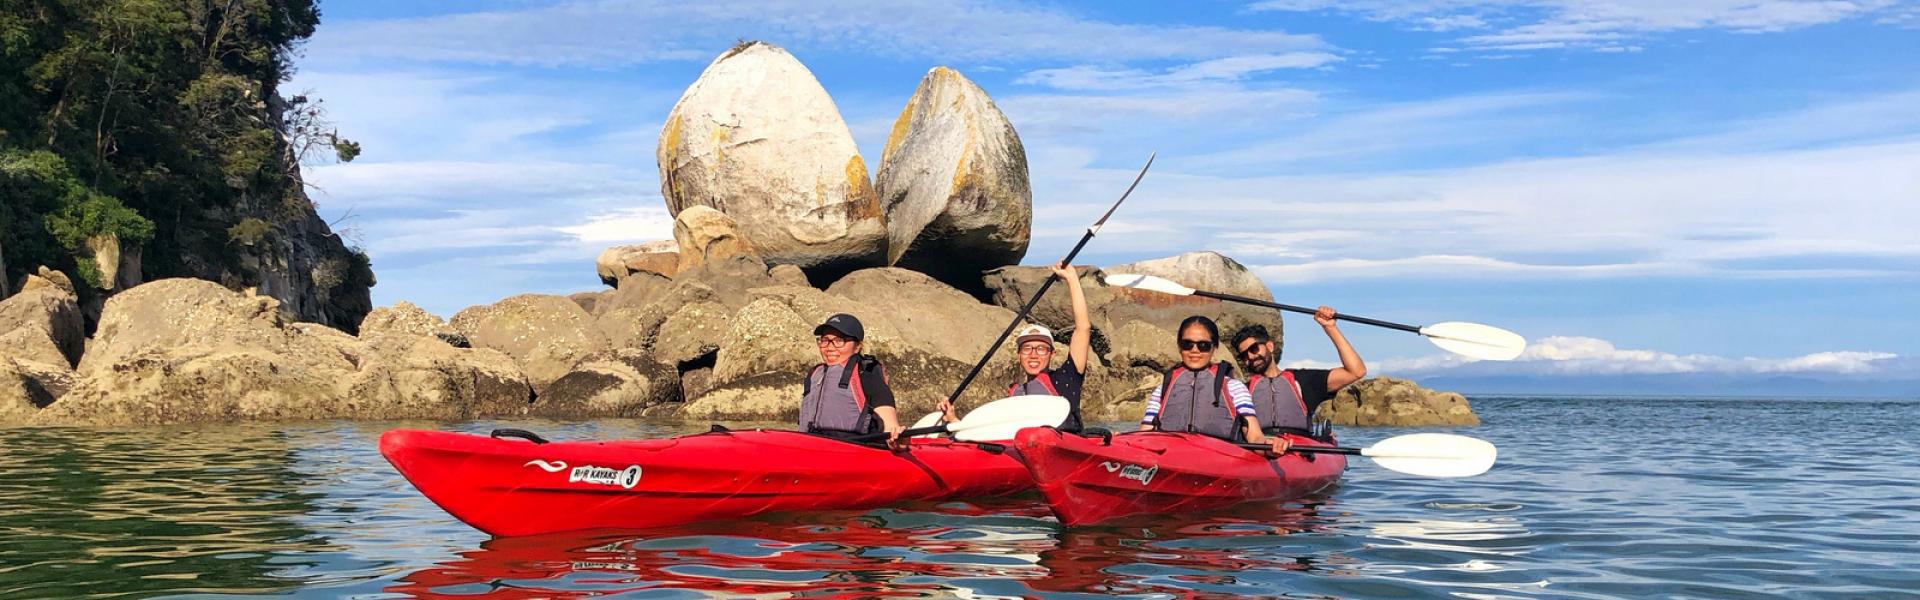 kayaking at Split Apple Rock with R & R Kayaks